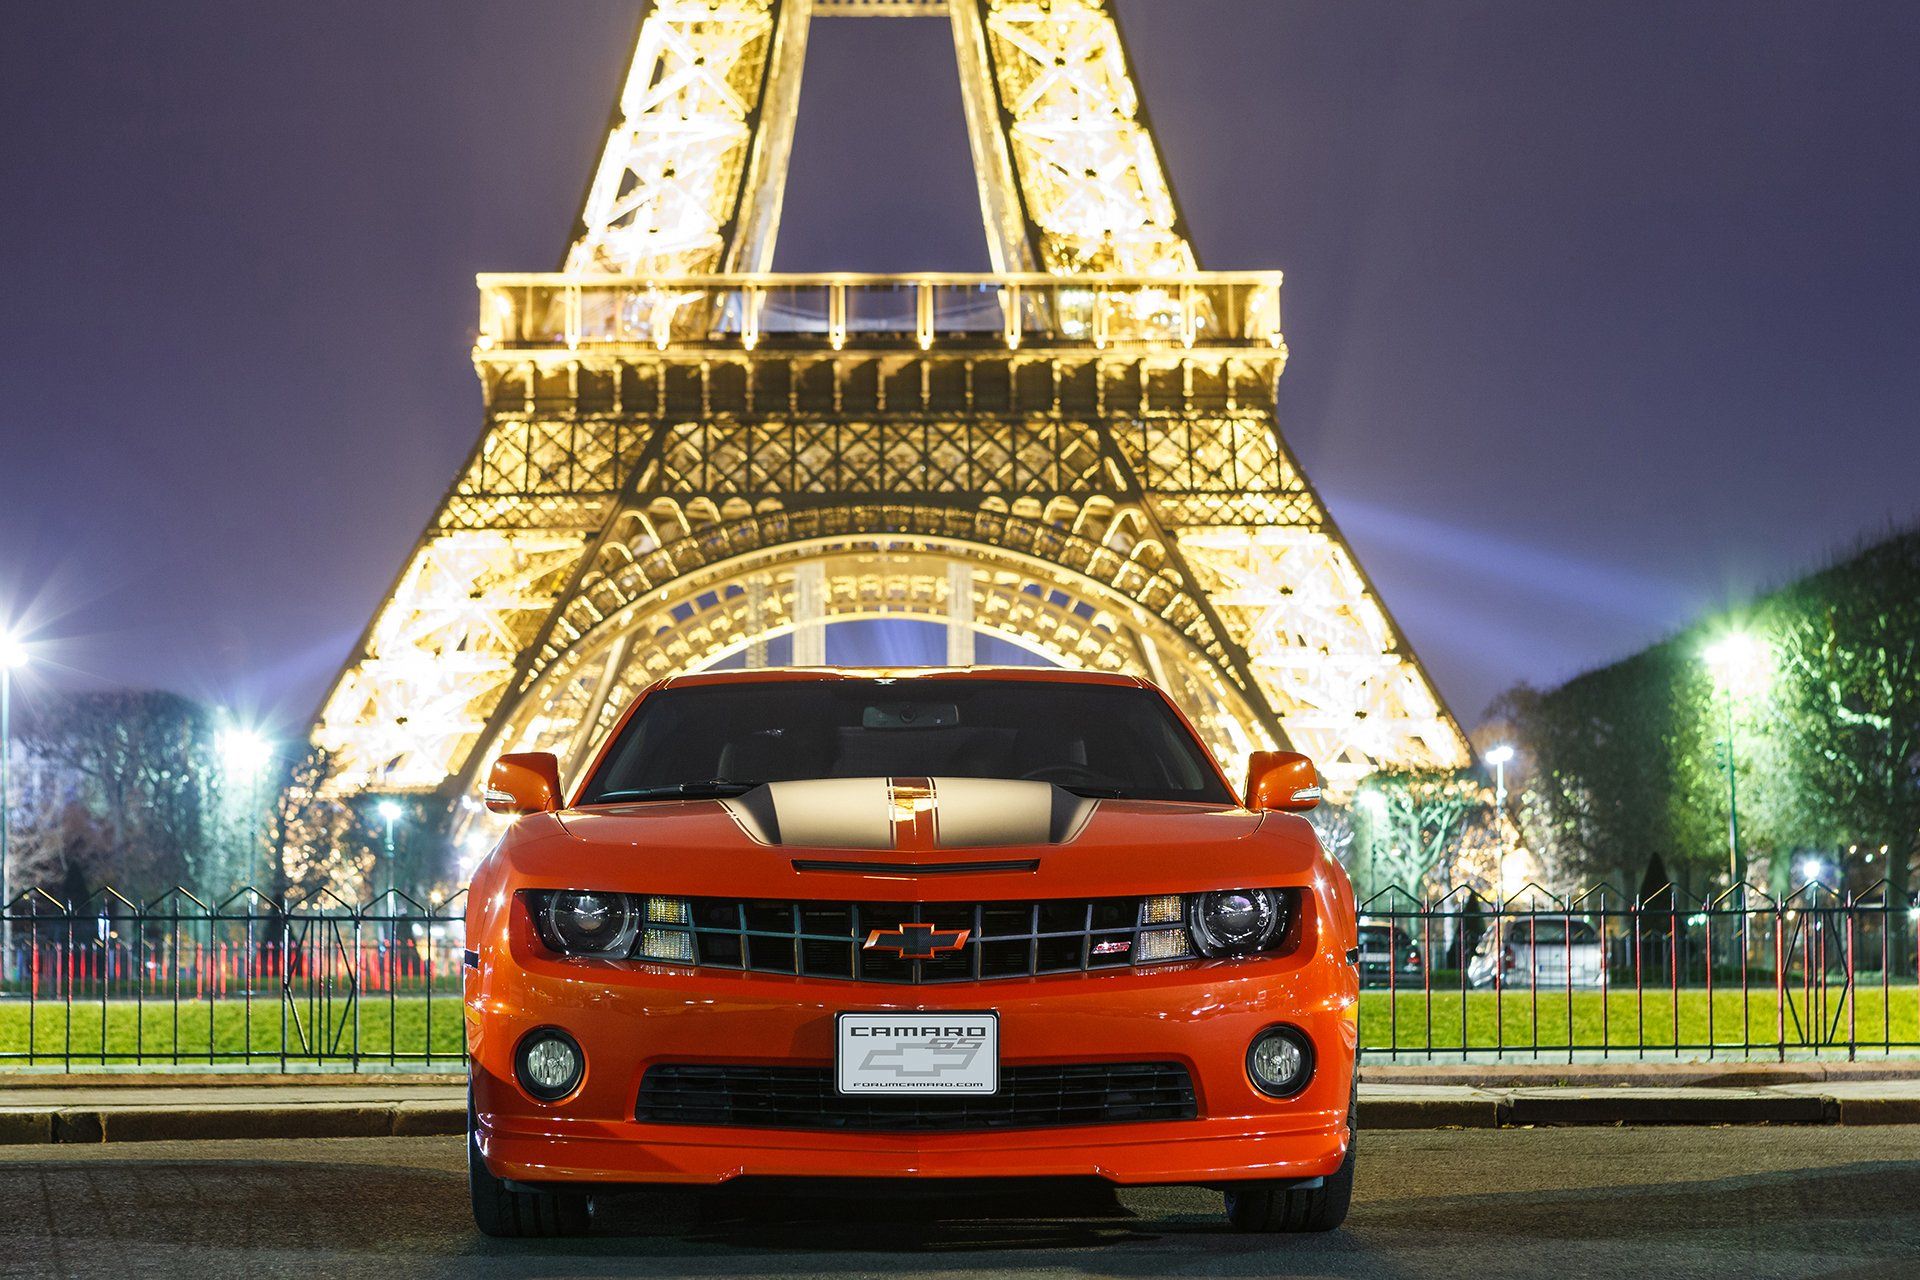 Машины привлекающие внимание. Автомобили Франции. Машины в Париже. Французские авто. Марка машины с башней.